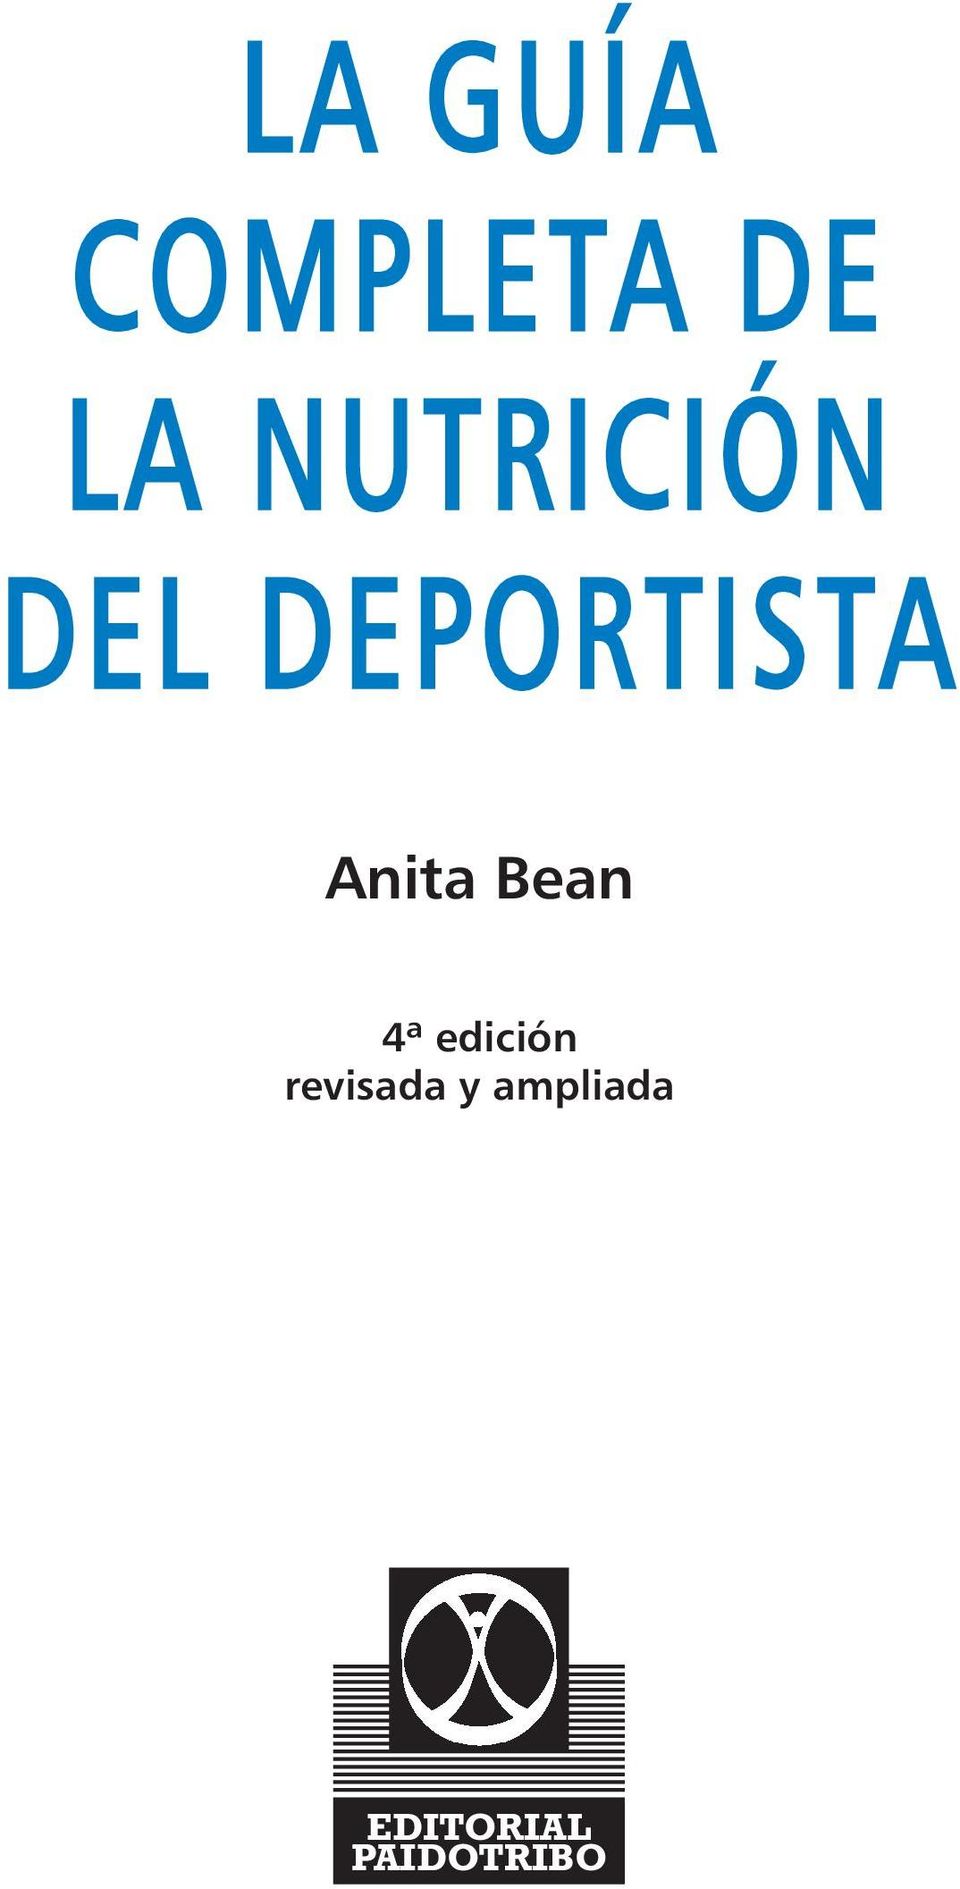 Anita Bean 4ª edición